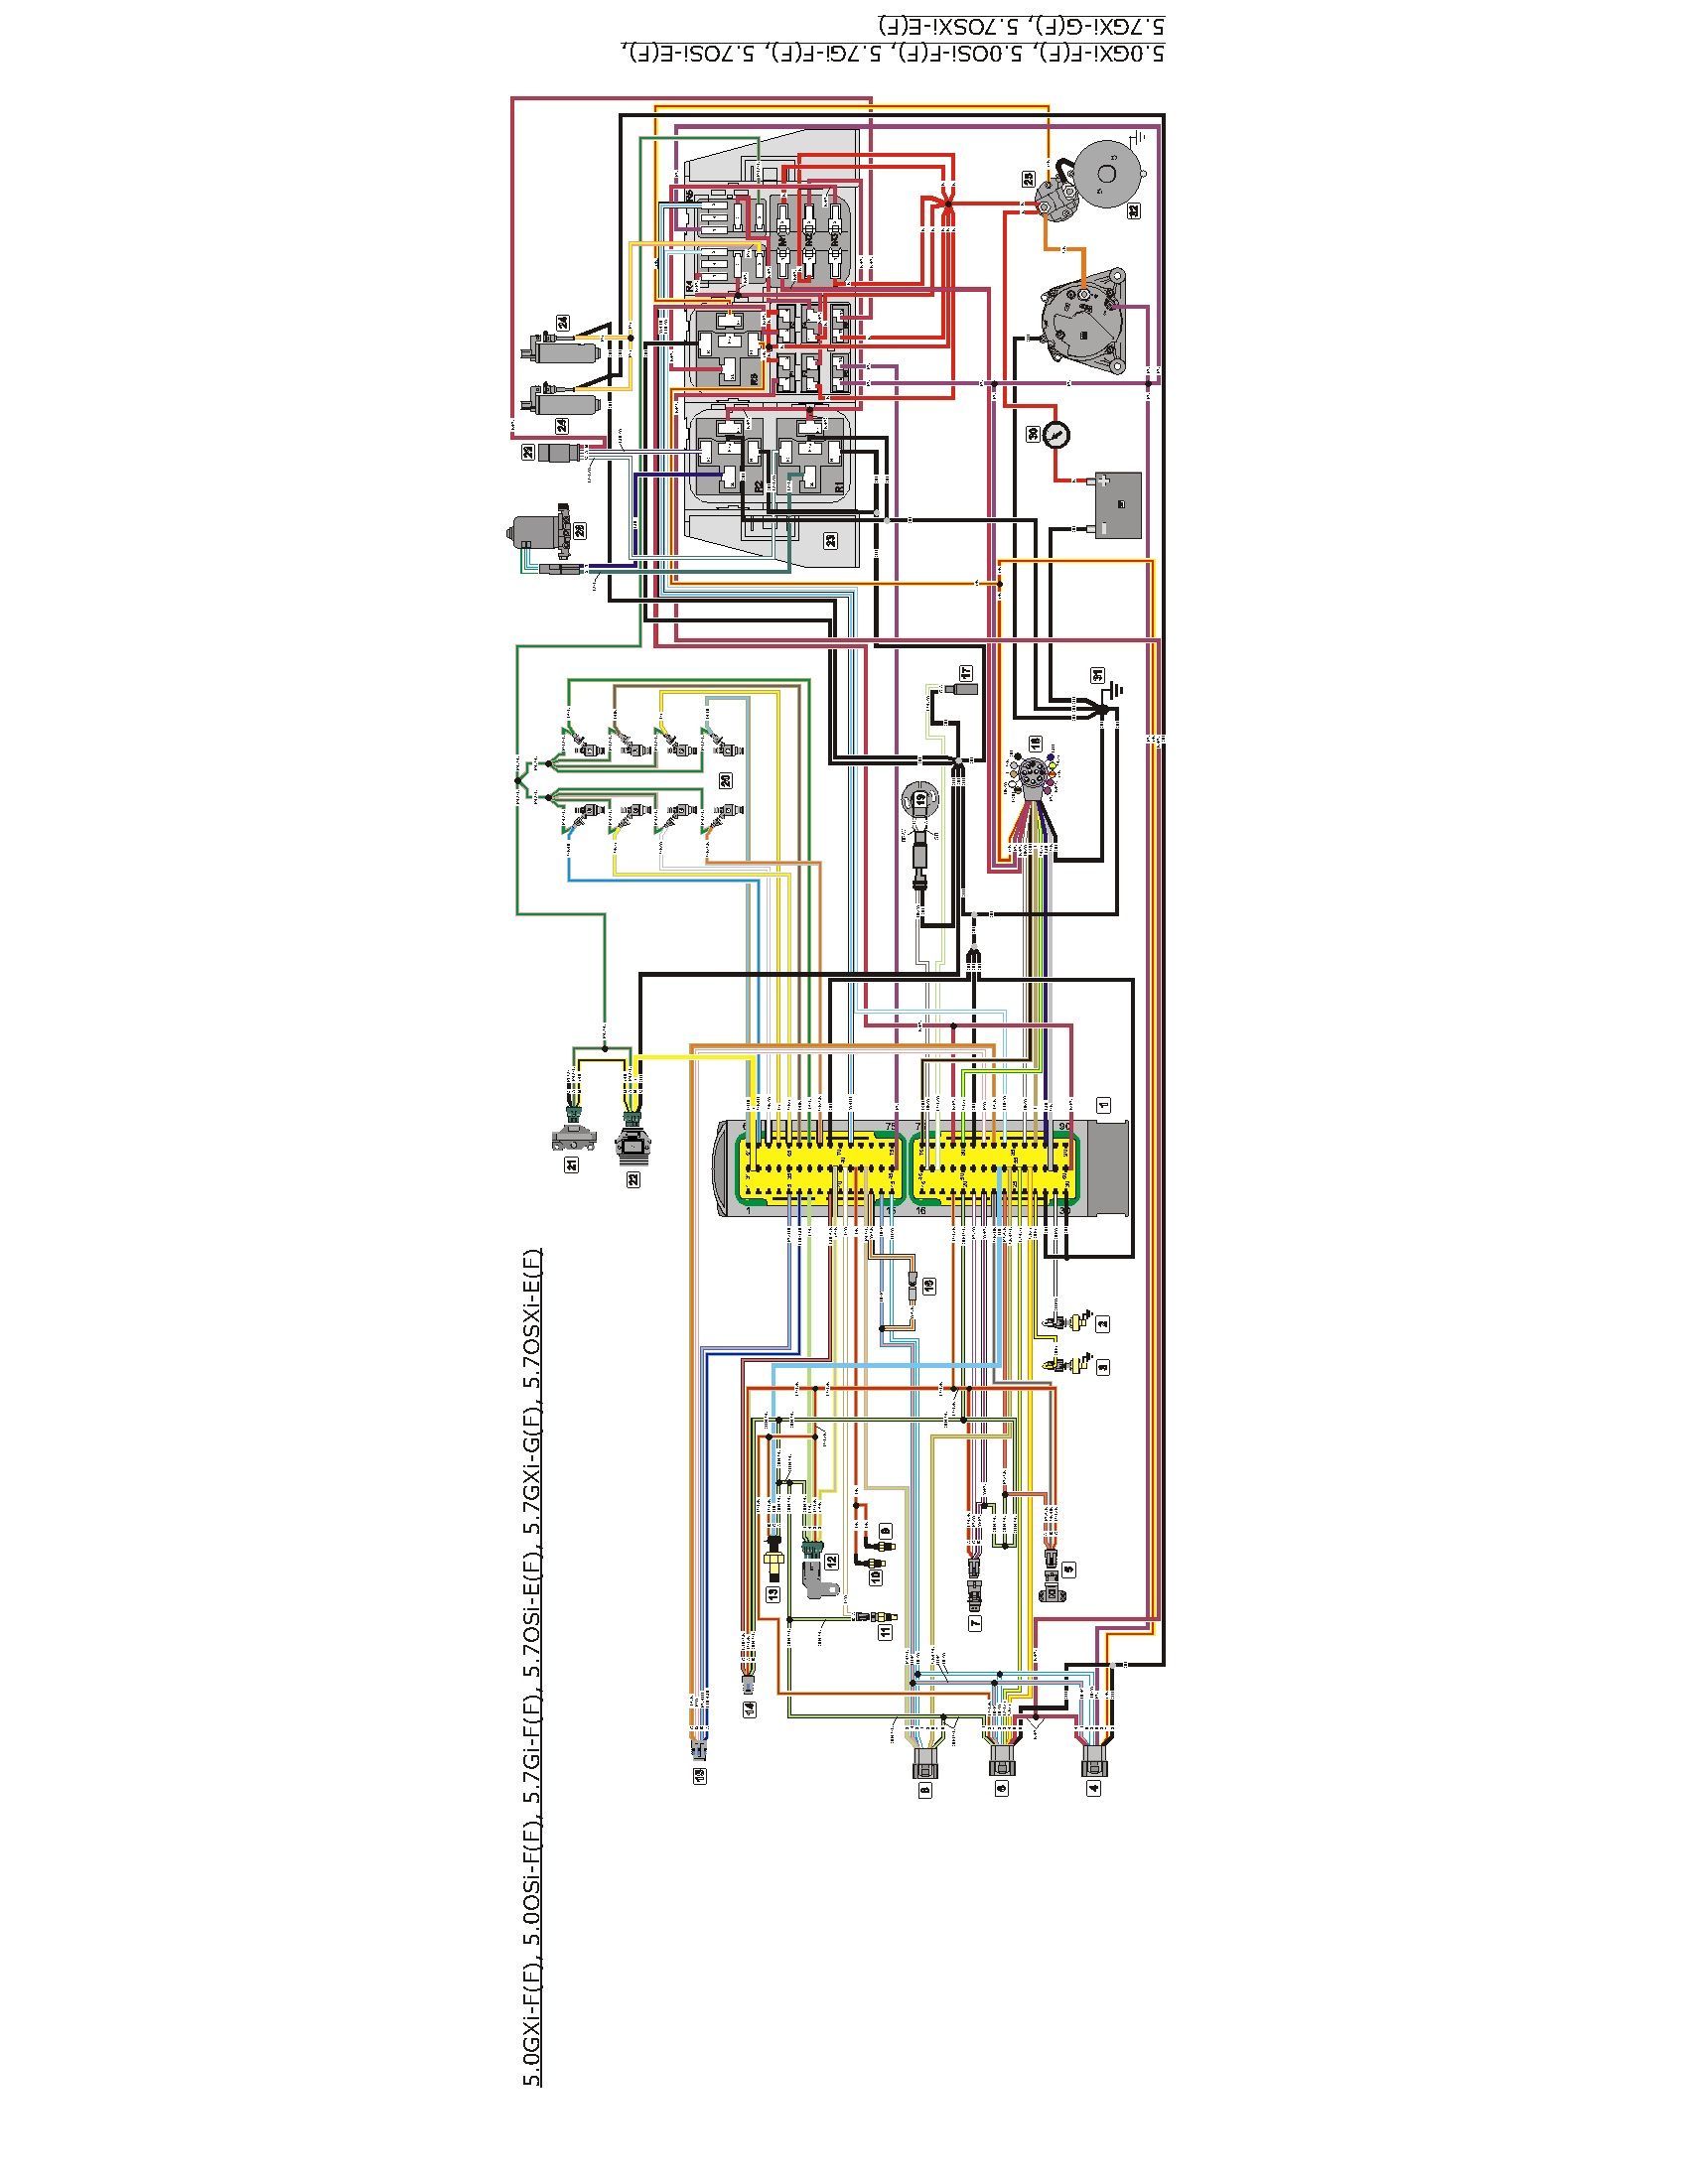 volvo penta gxi wiring diagram